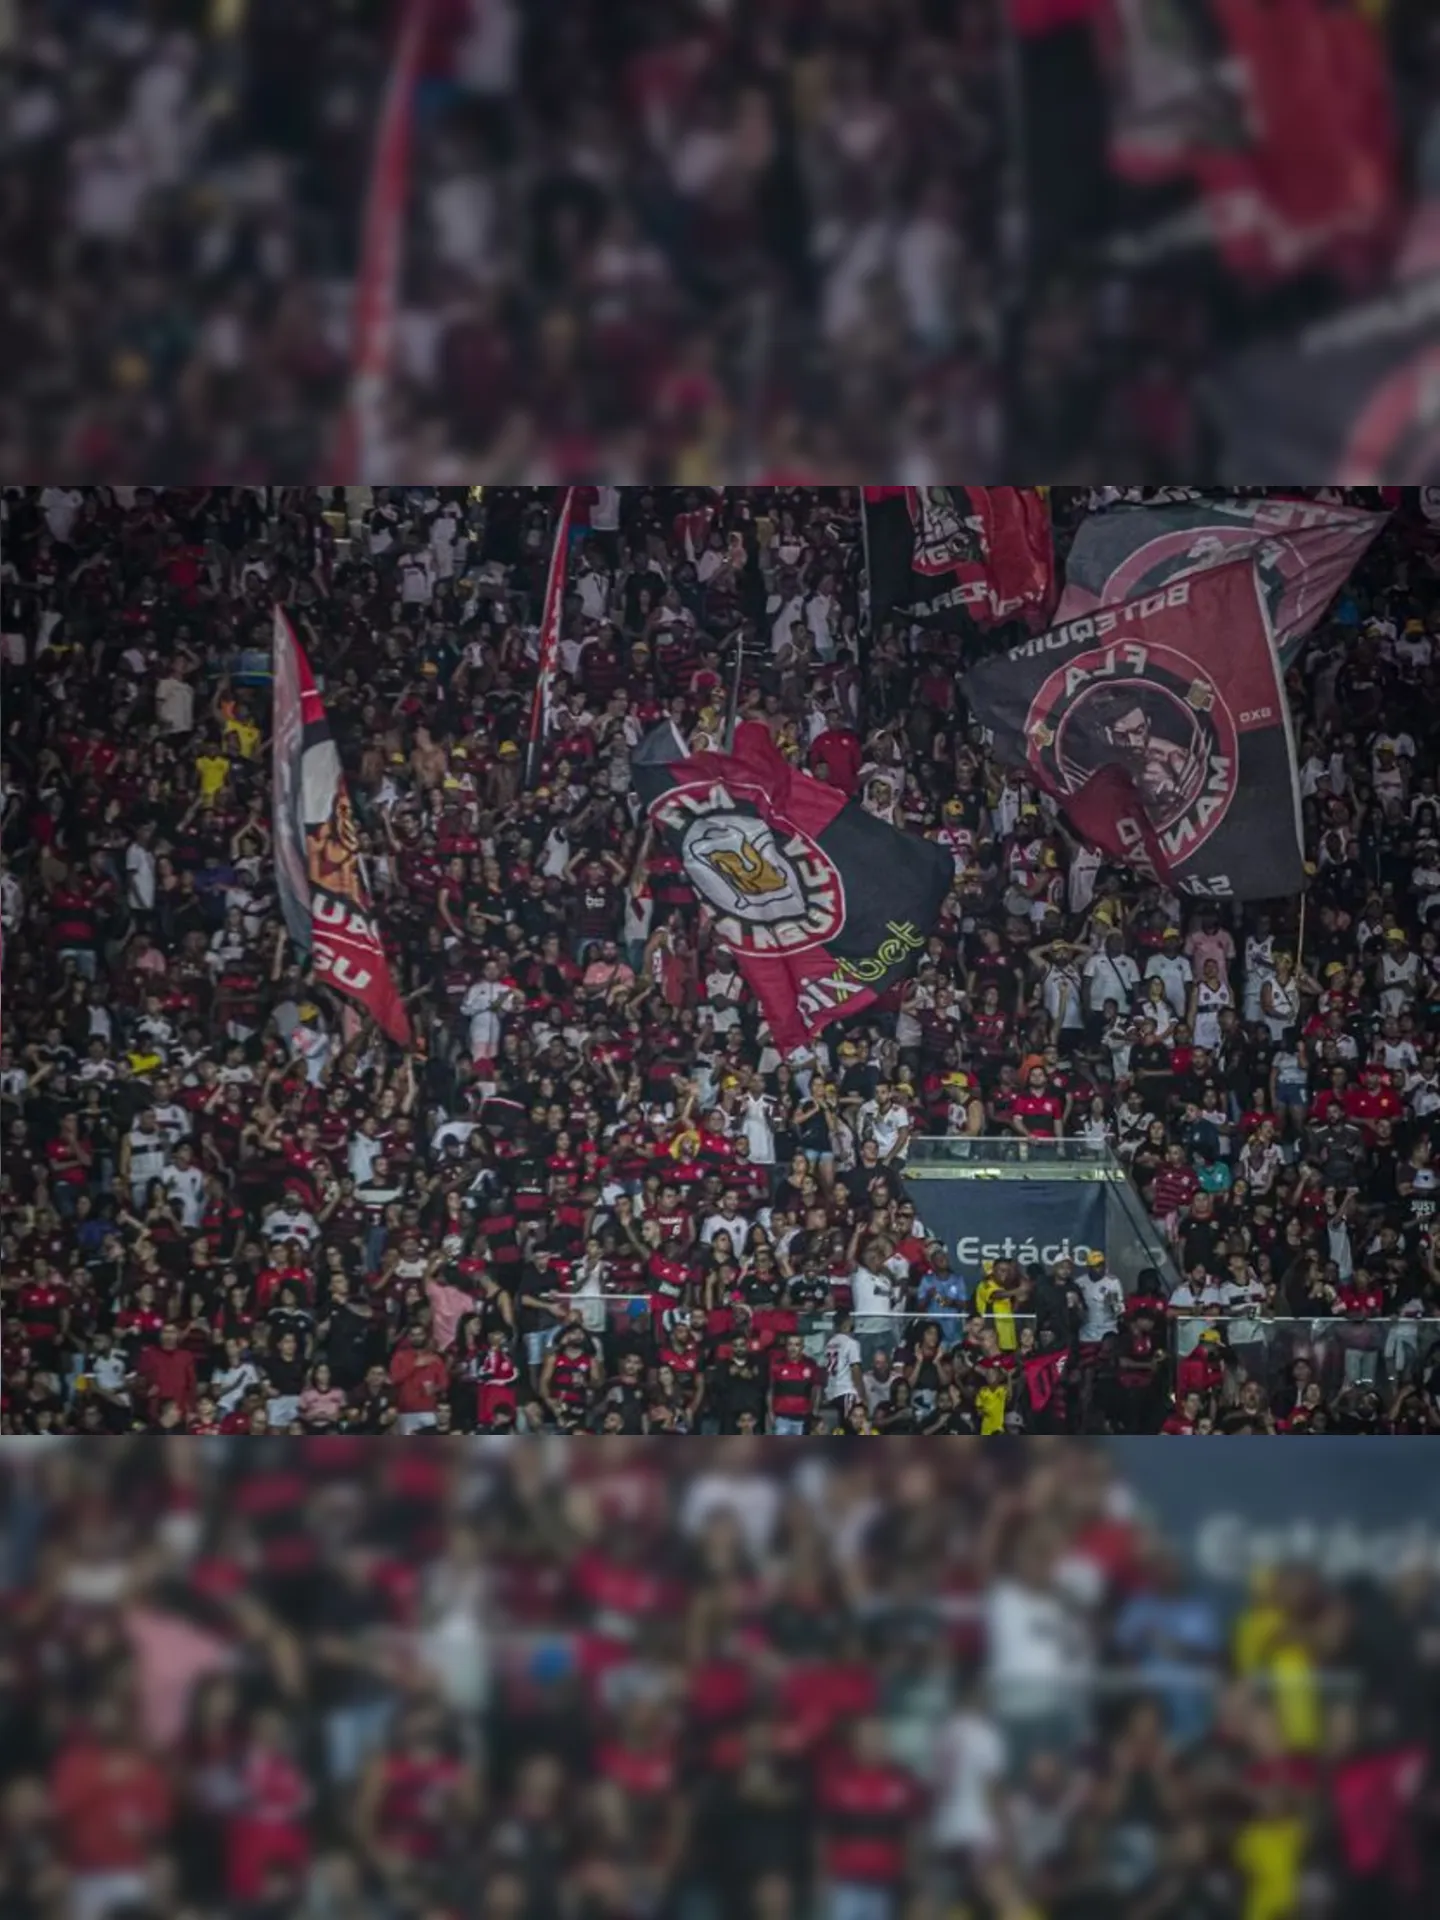 Torcida do Flamengo está mais próxima de ter um estádio para chamar de seu